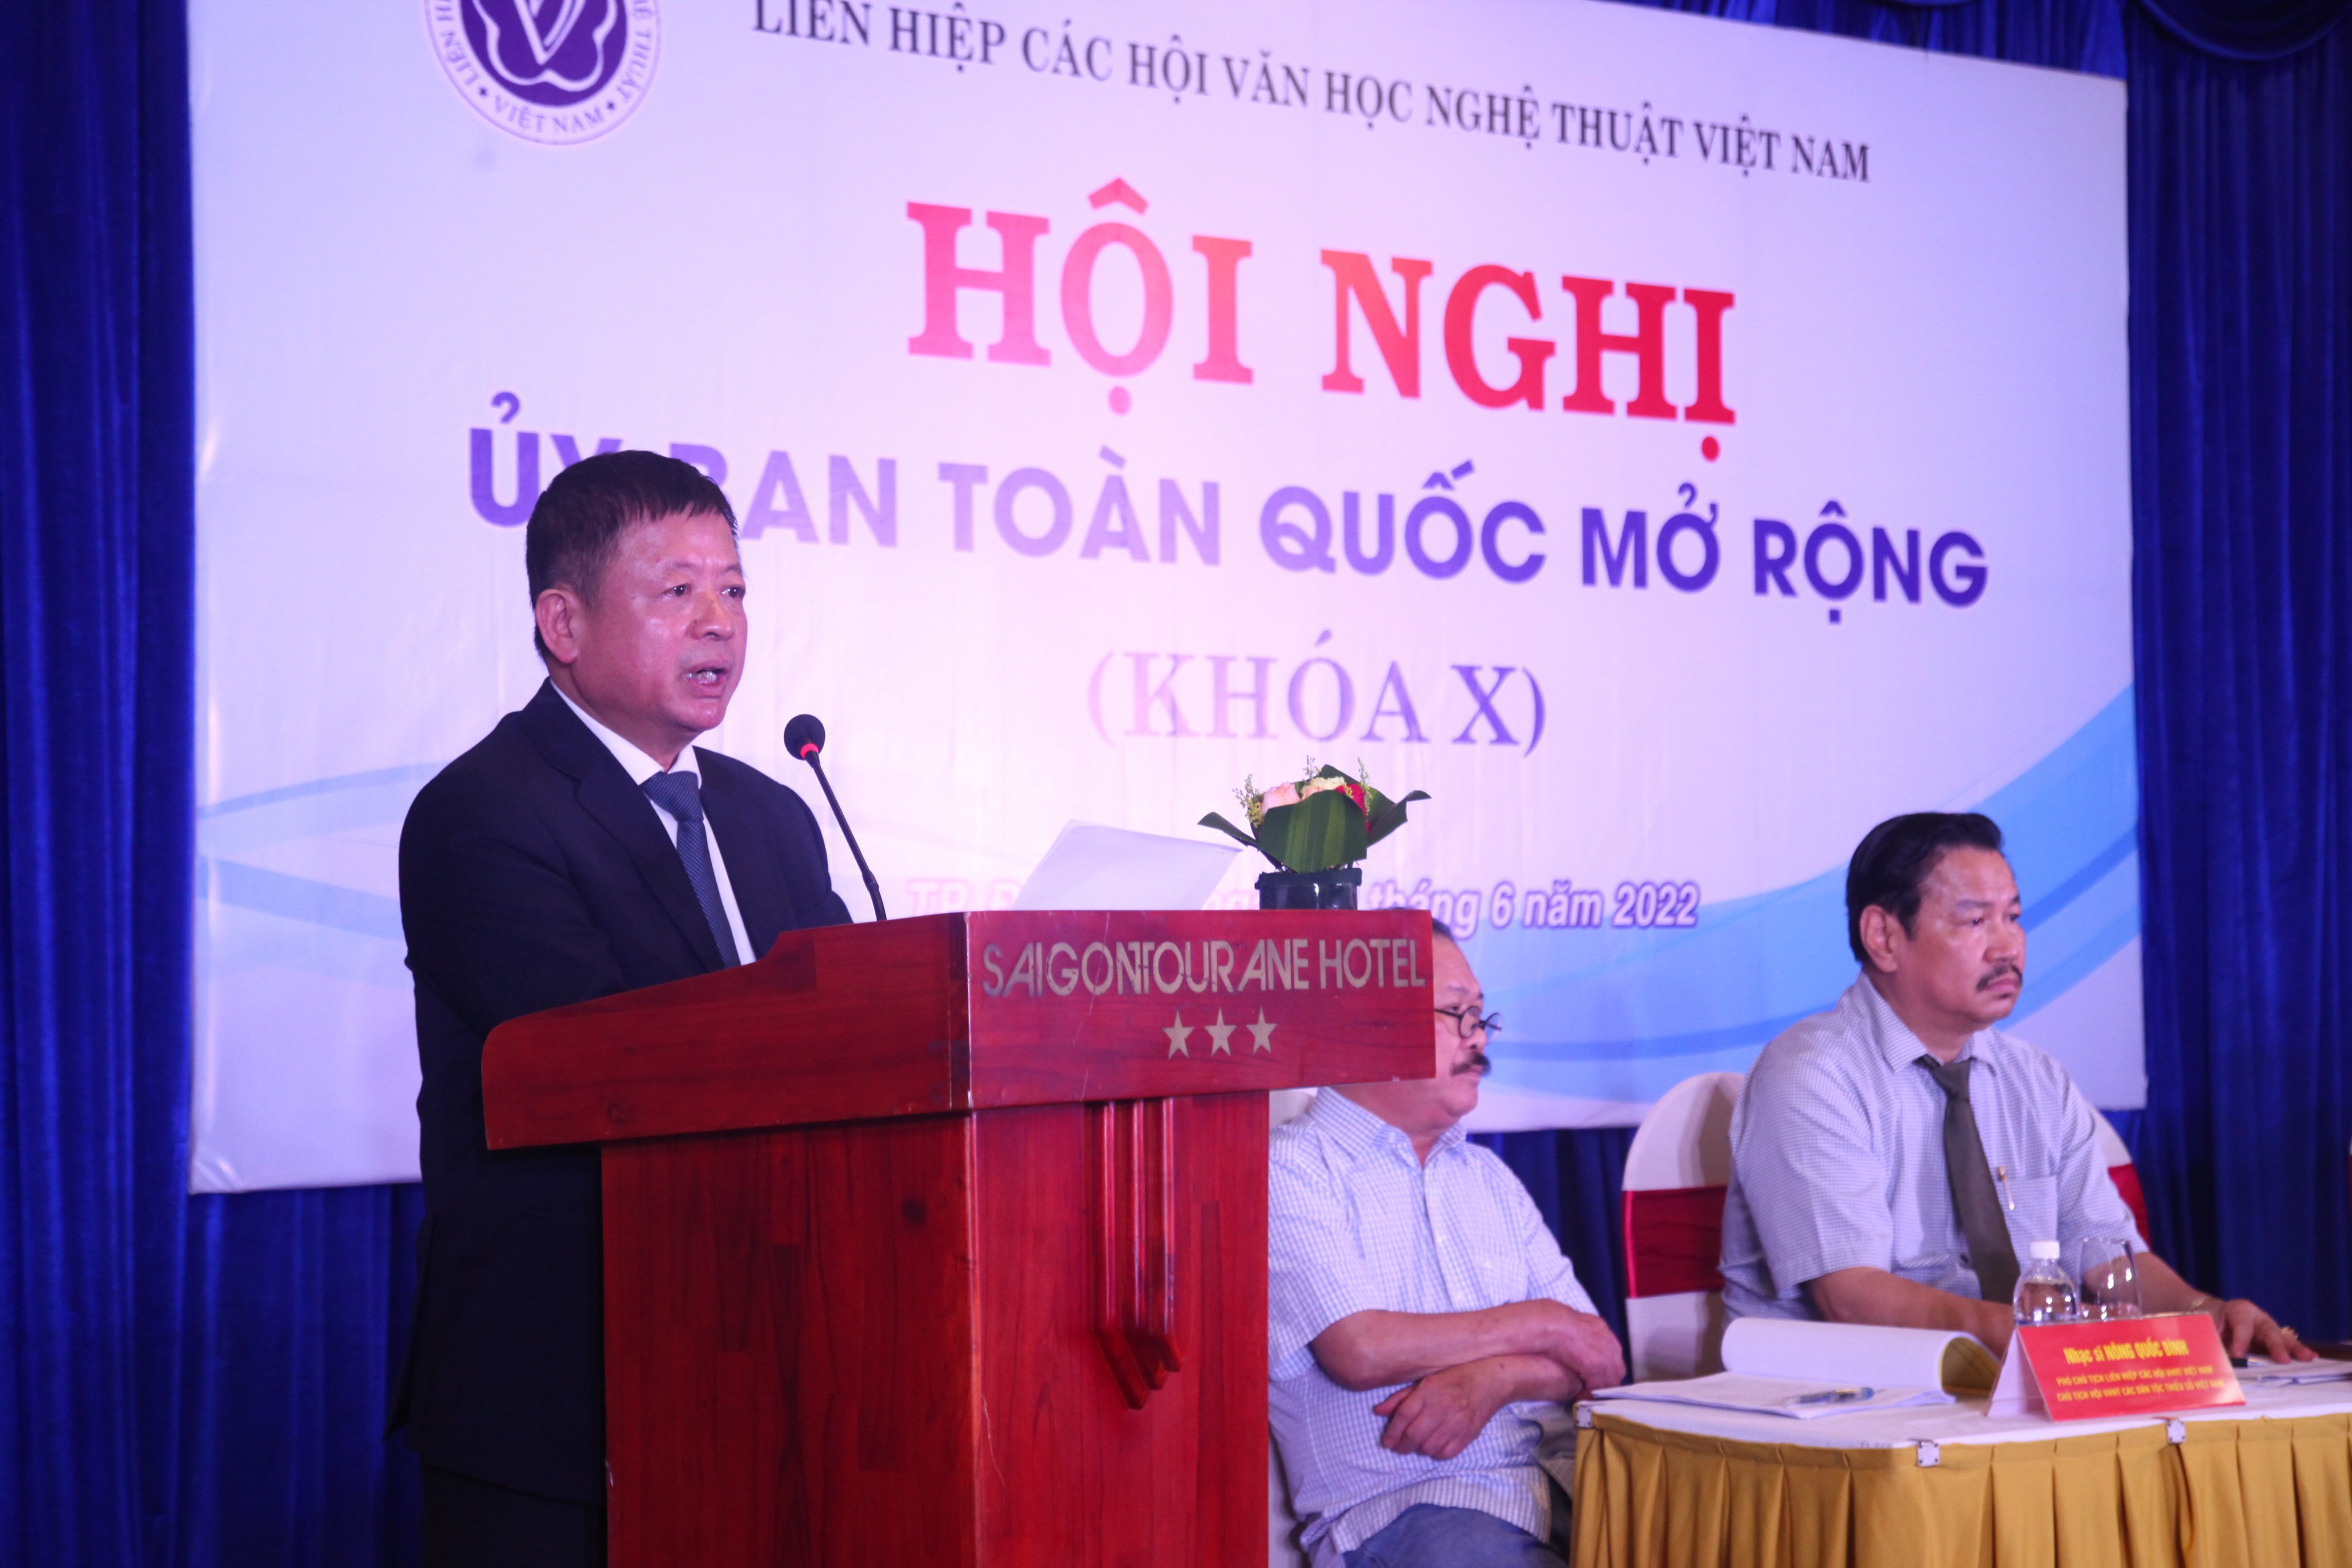 Đoàn kết xây dựng Liên hiệp các Hội VHNT Việt Nam trở thành tổ chức chính trị - xã hội - nghề nghiệp vững mạnh toàn diện - 1